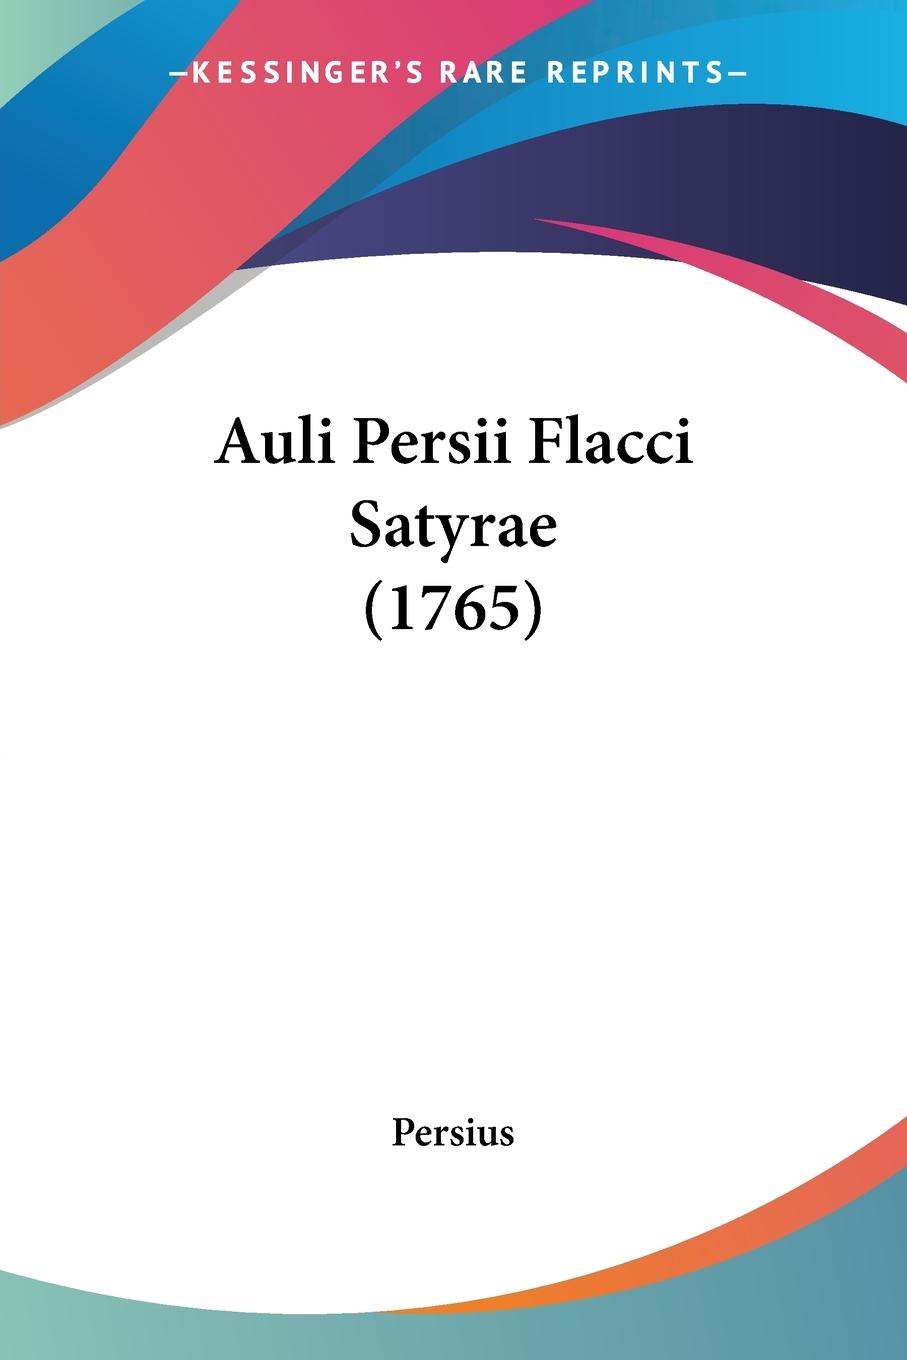 Auli Persii Flacci Satyrae (1765) - Persius